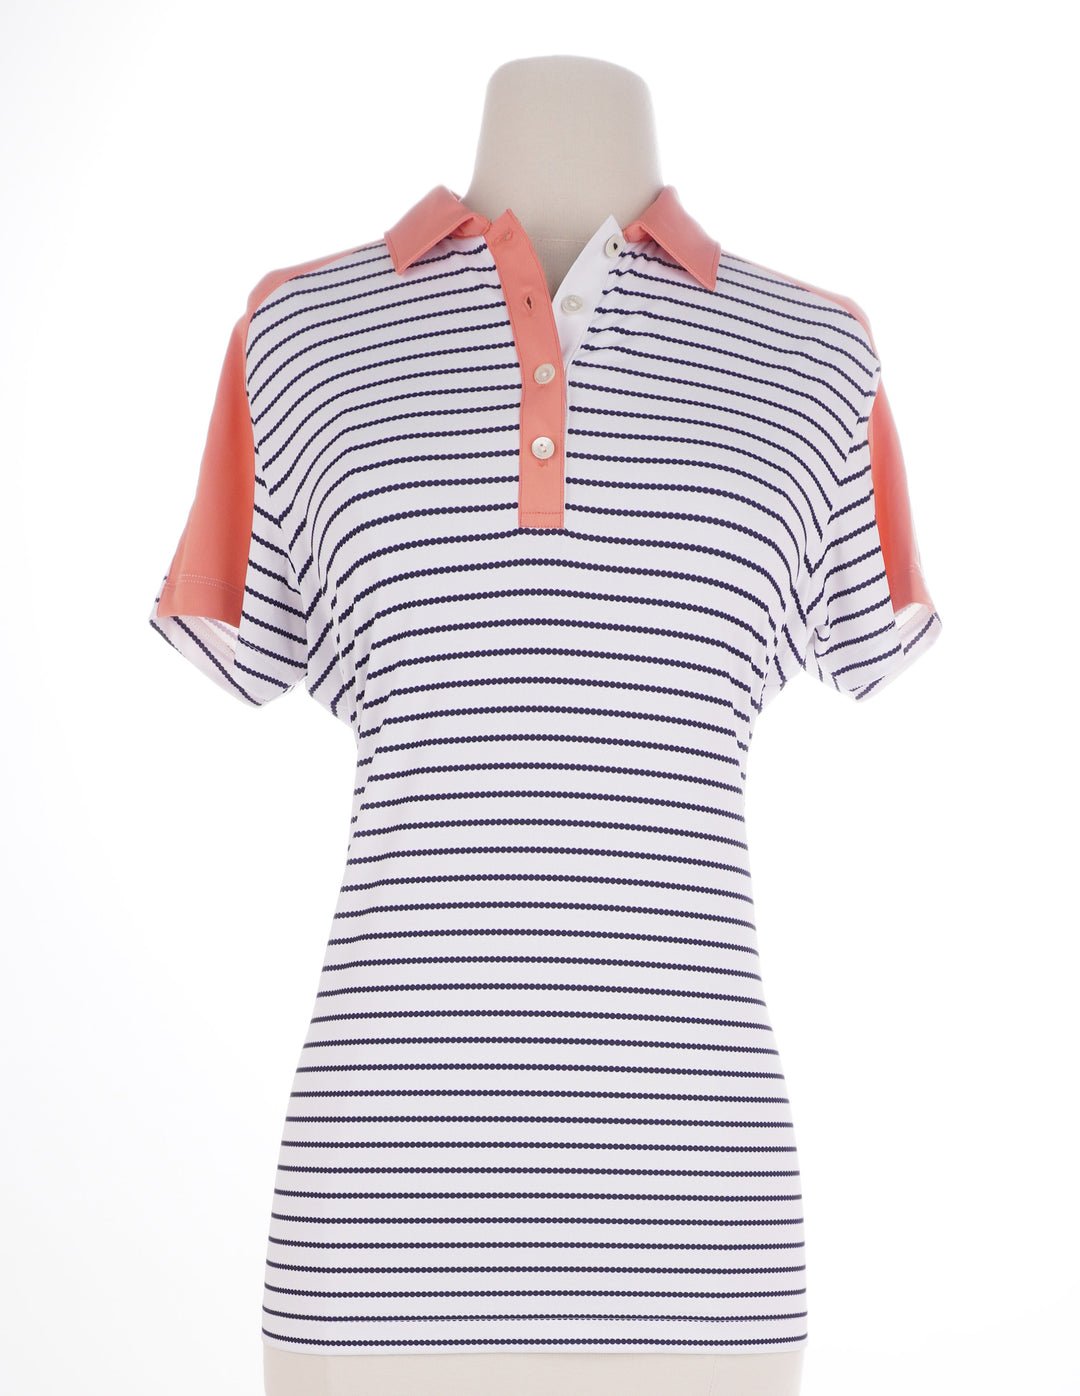 Peter Millar Stripe Short Sleeve - Navy/White/Peach - Skorzie